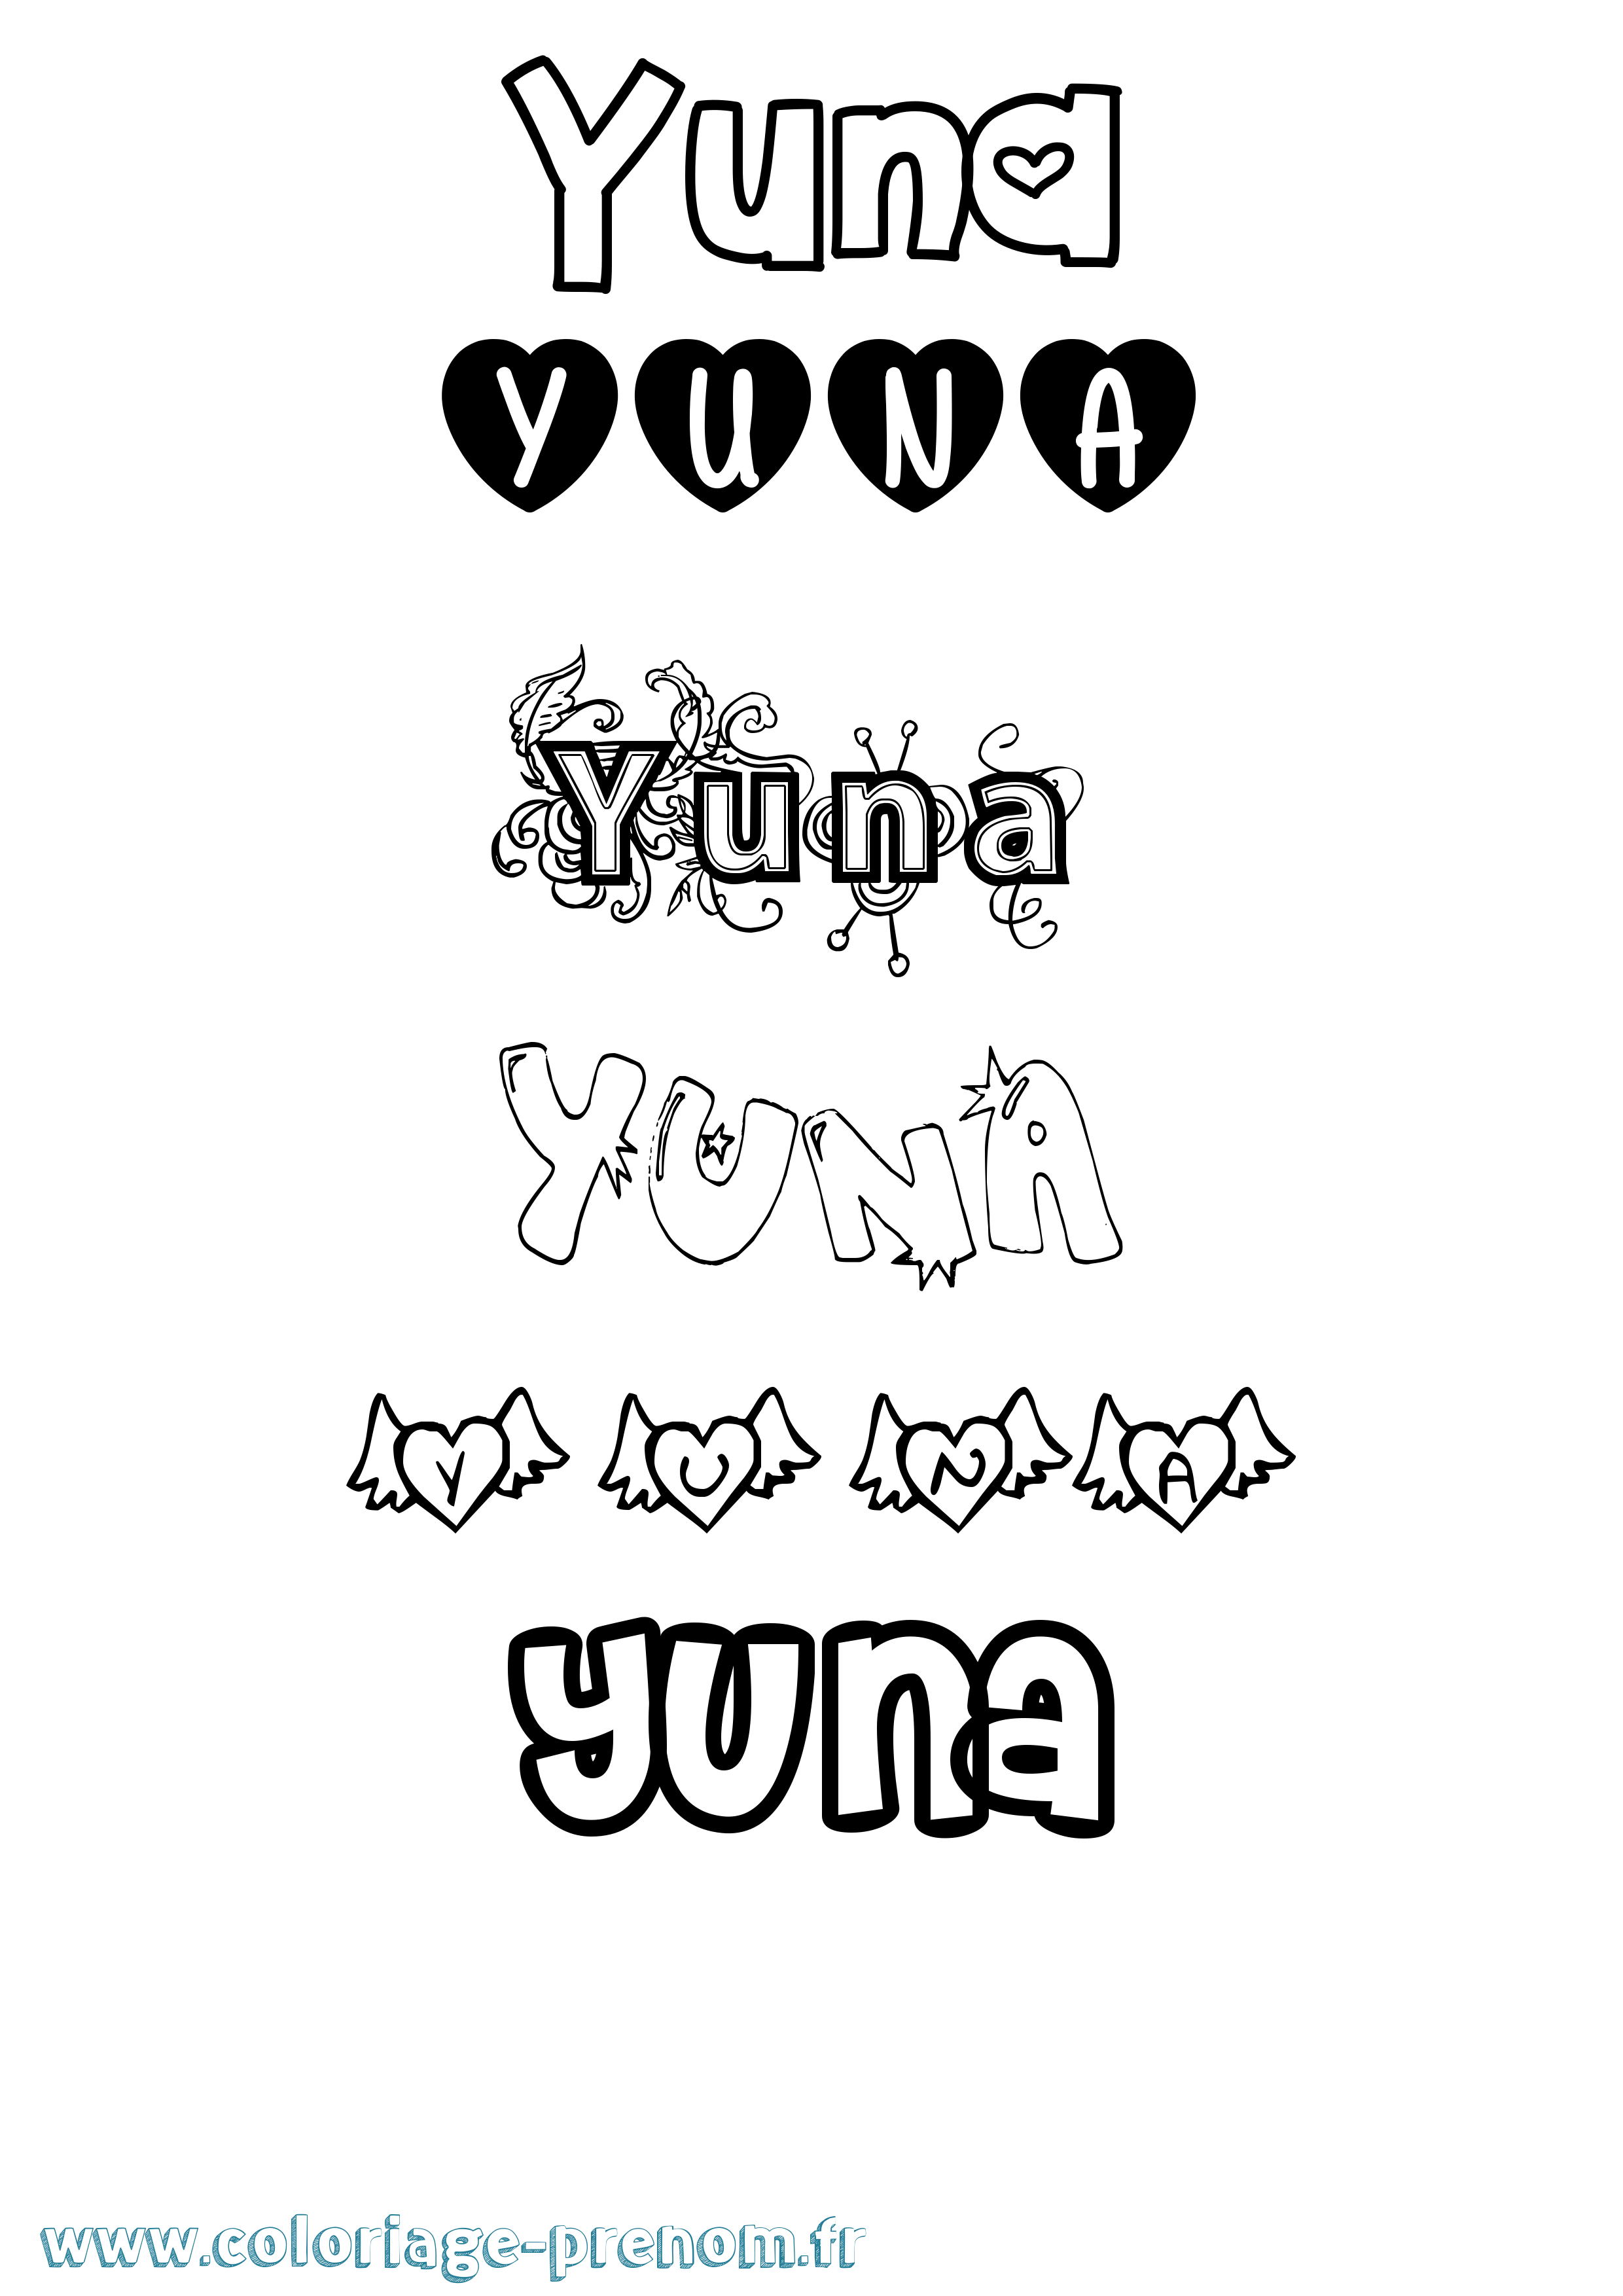 Coloriage prénom Yuna